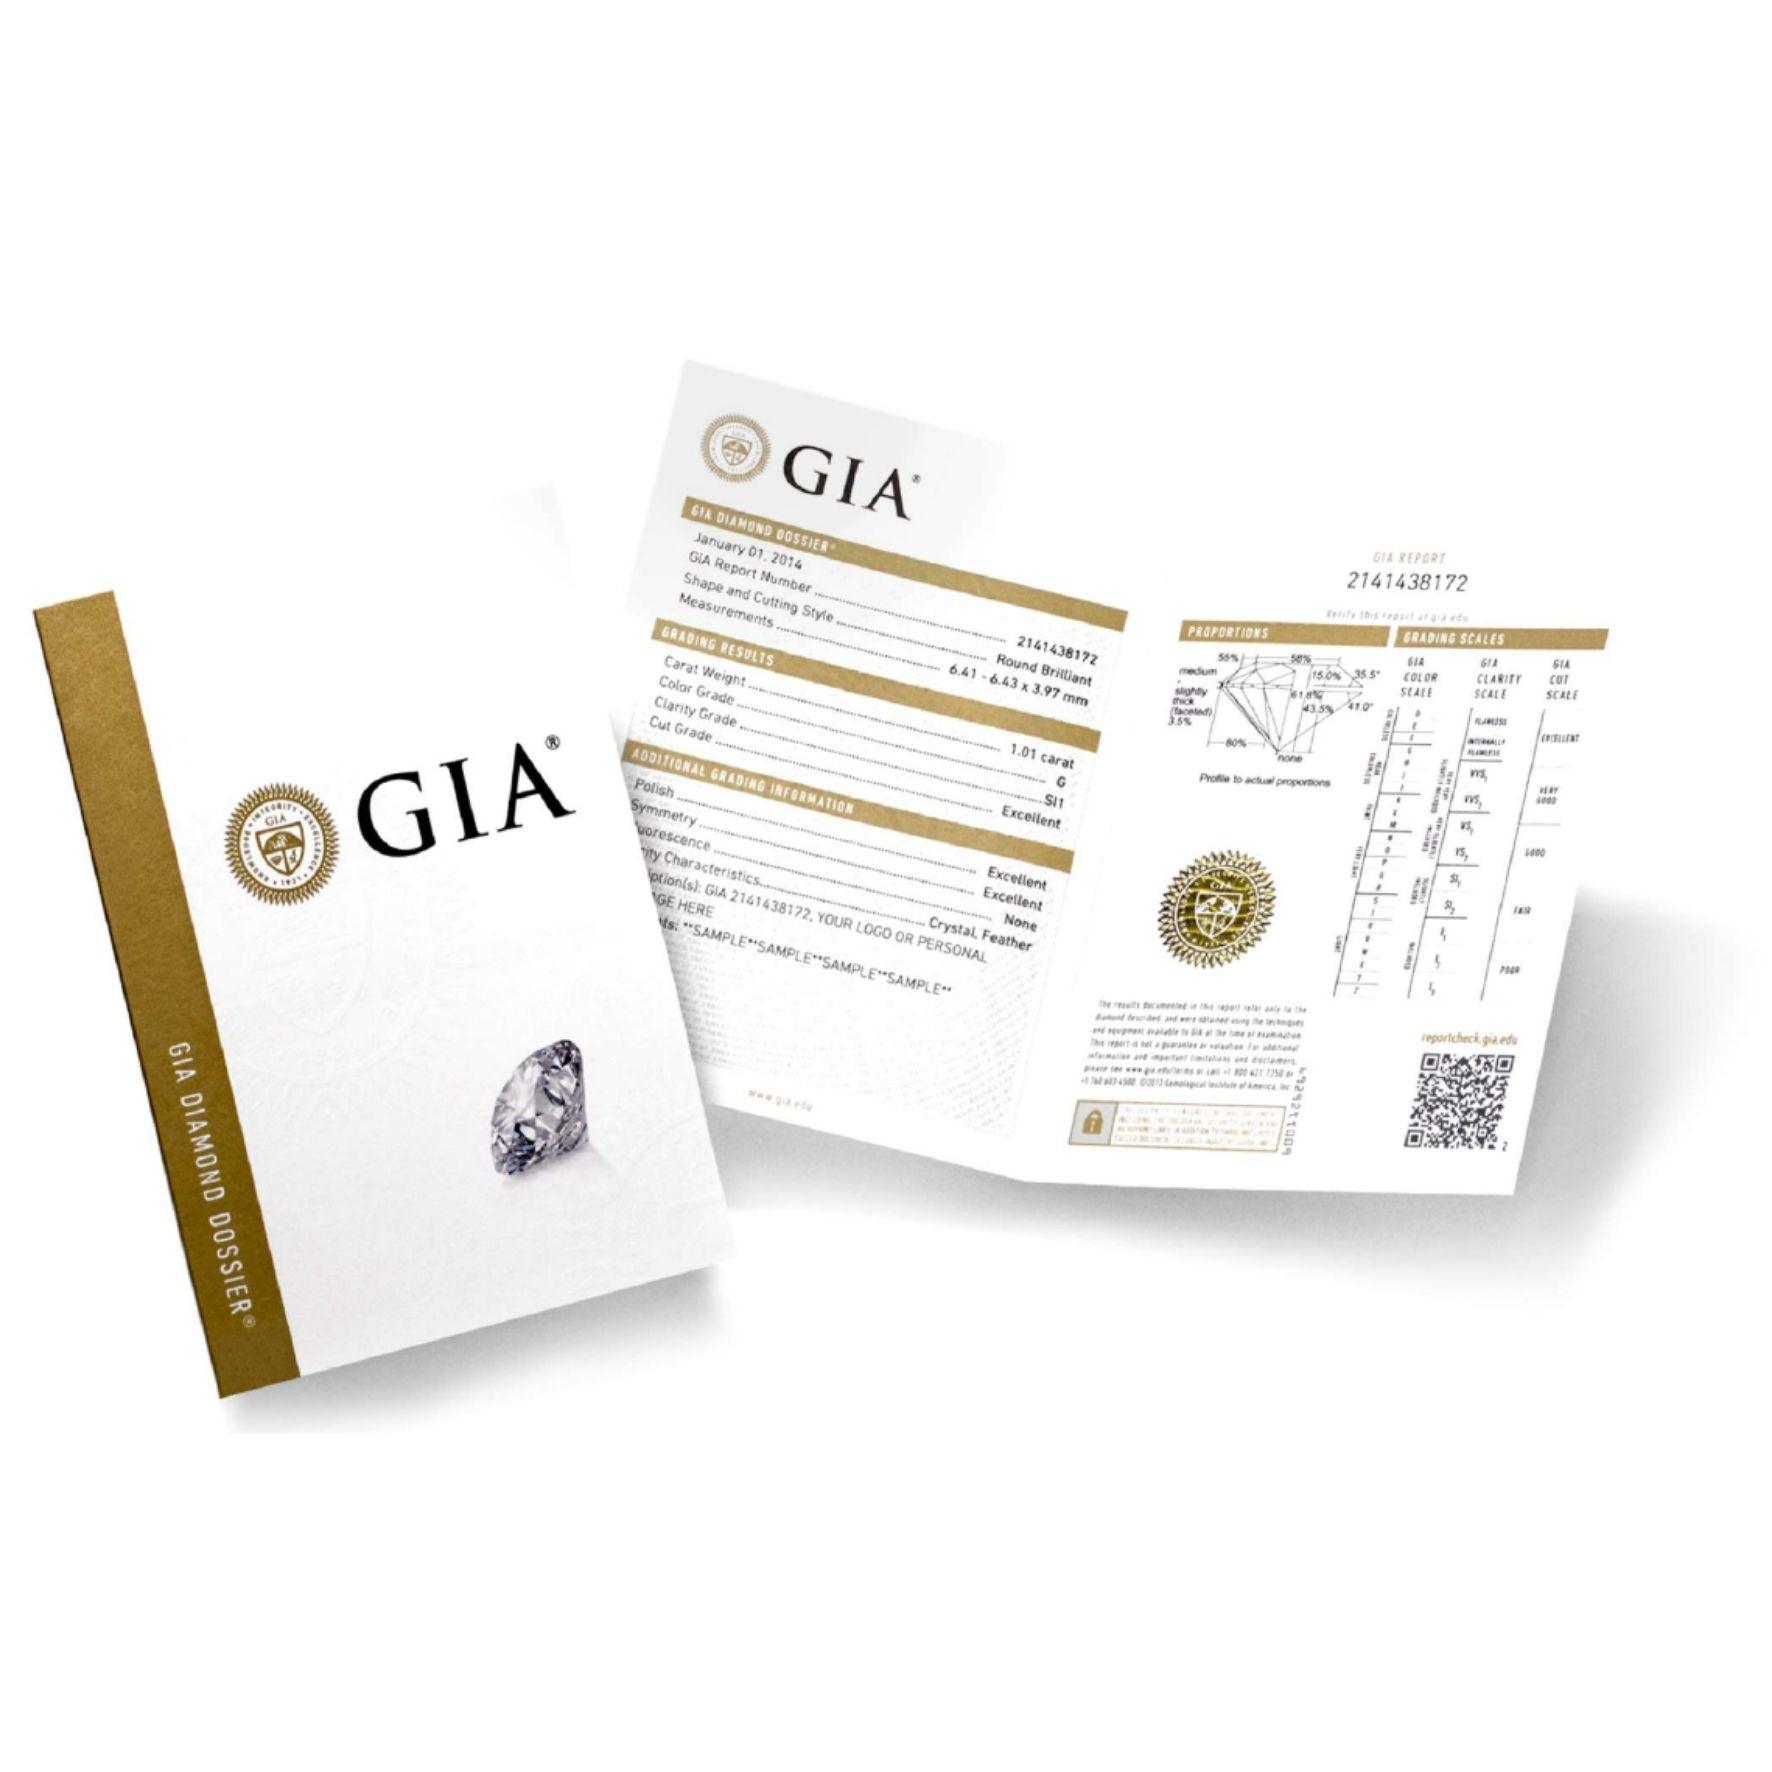 Πιστοποίηση διαμαντιών GIA για μονόπετρο δαχτυλίδι γάμου